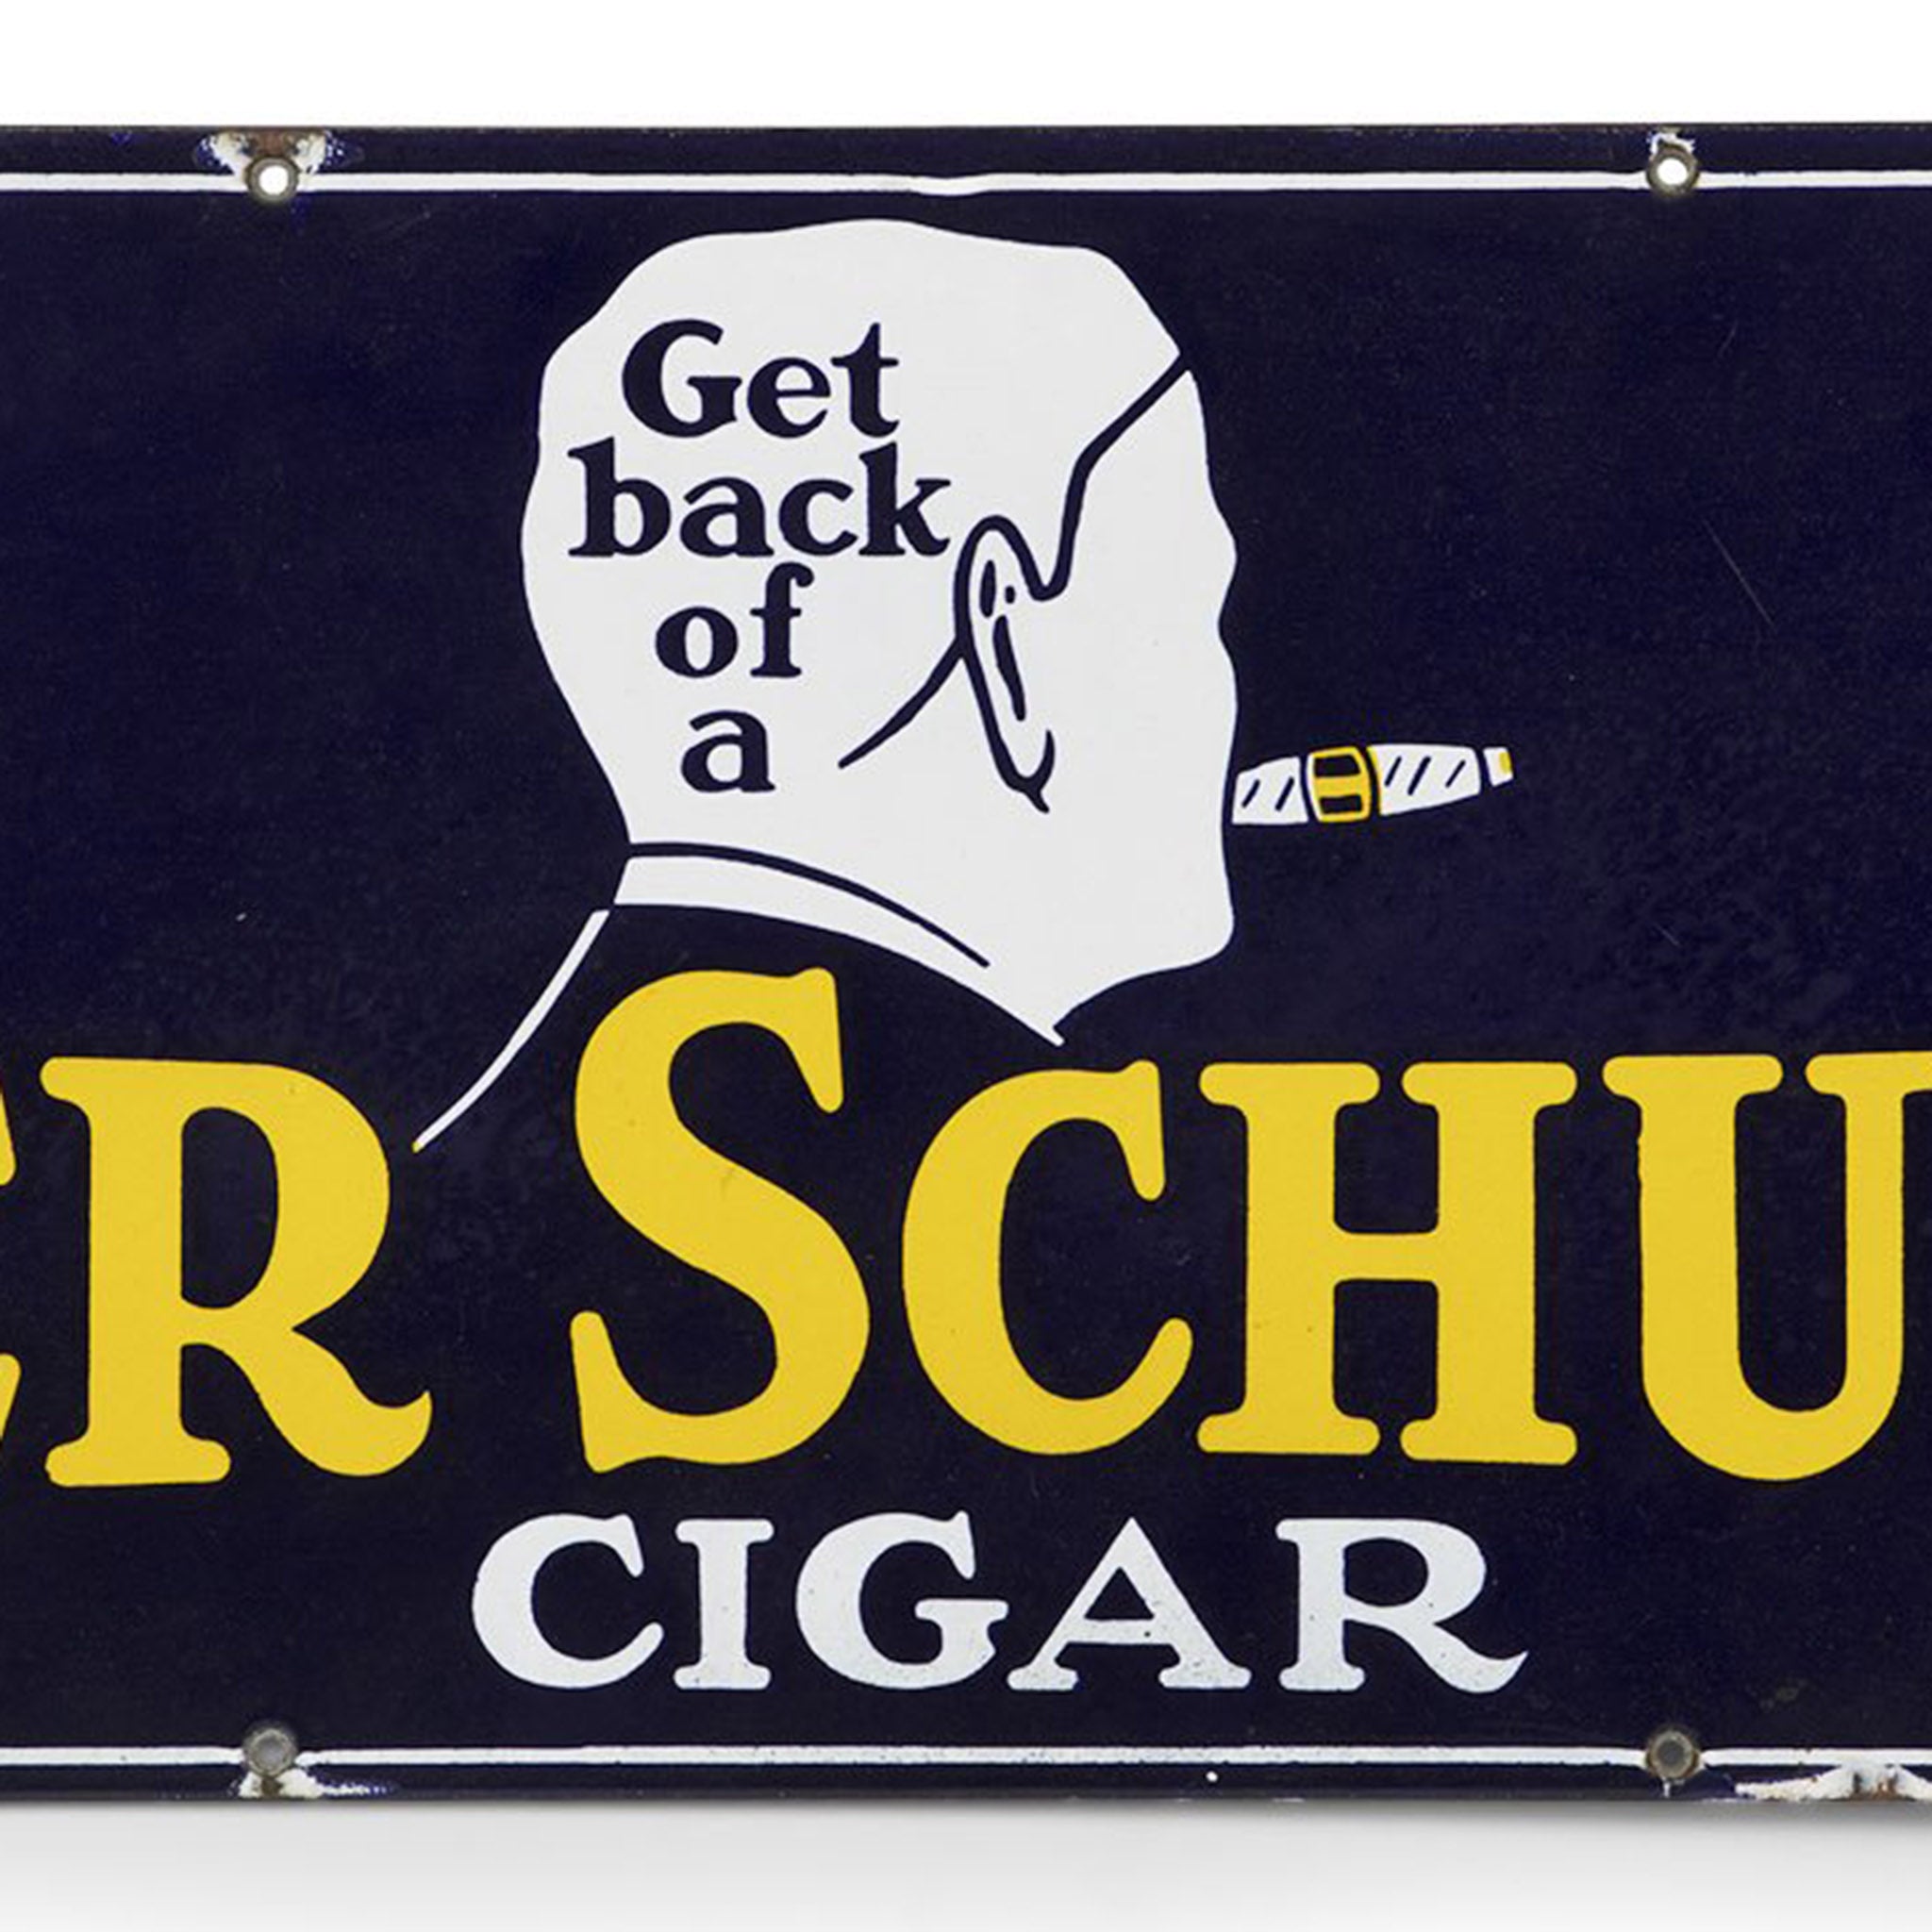 Peter Schuyler Cigars Porcelain Sign